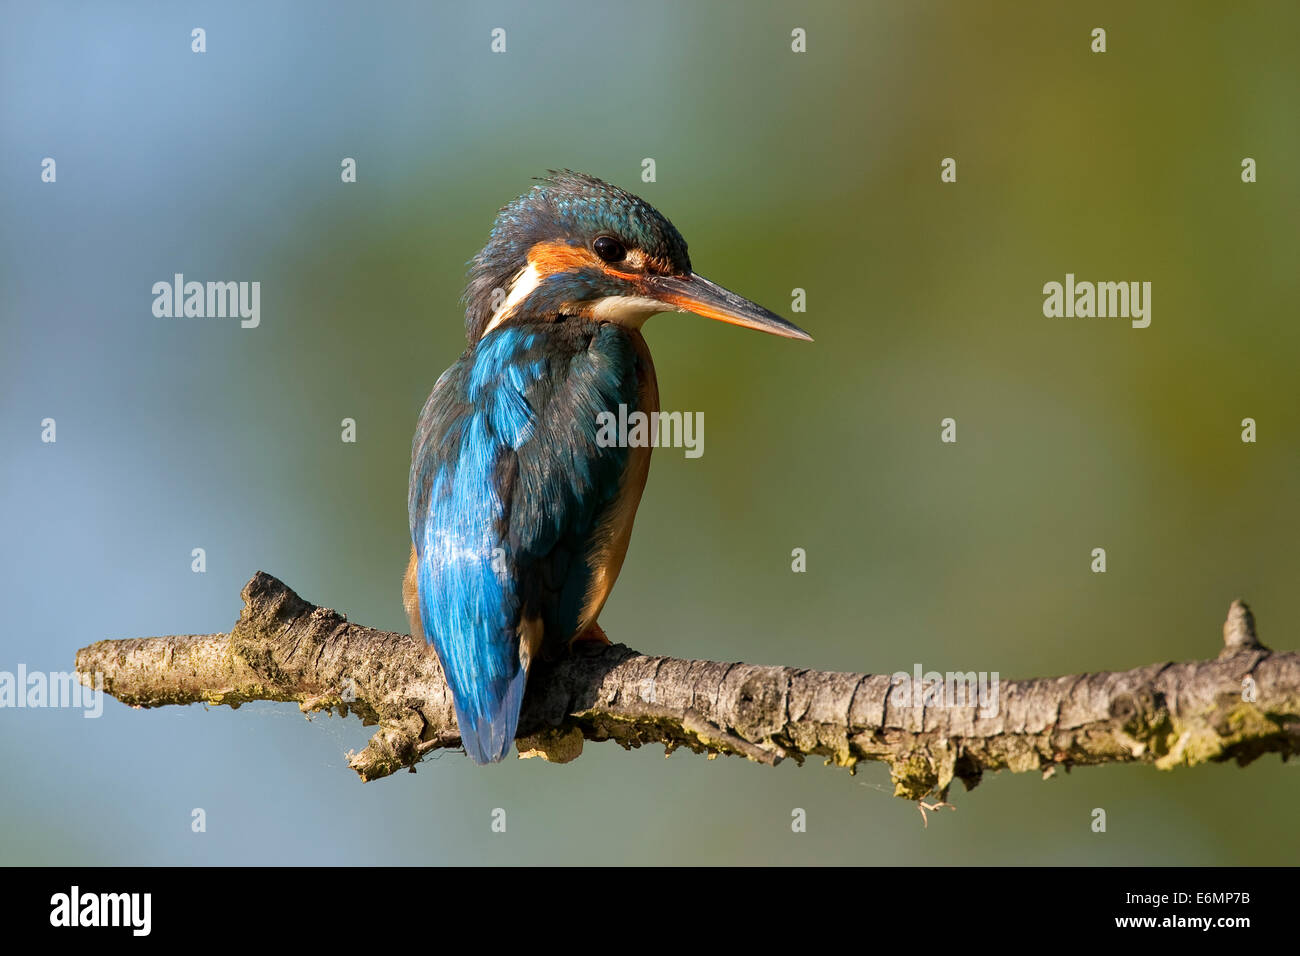 Kingfisher, Eisvogel, Eis-Vogel, Alcedo atthis, Martin-pêcheur d'Europa Foto Stock